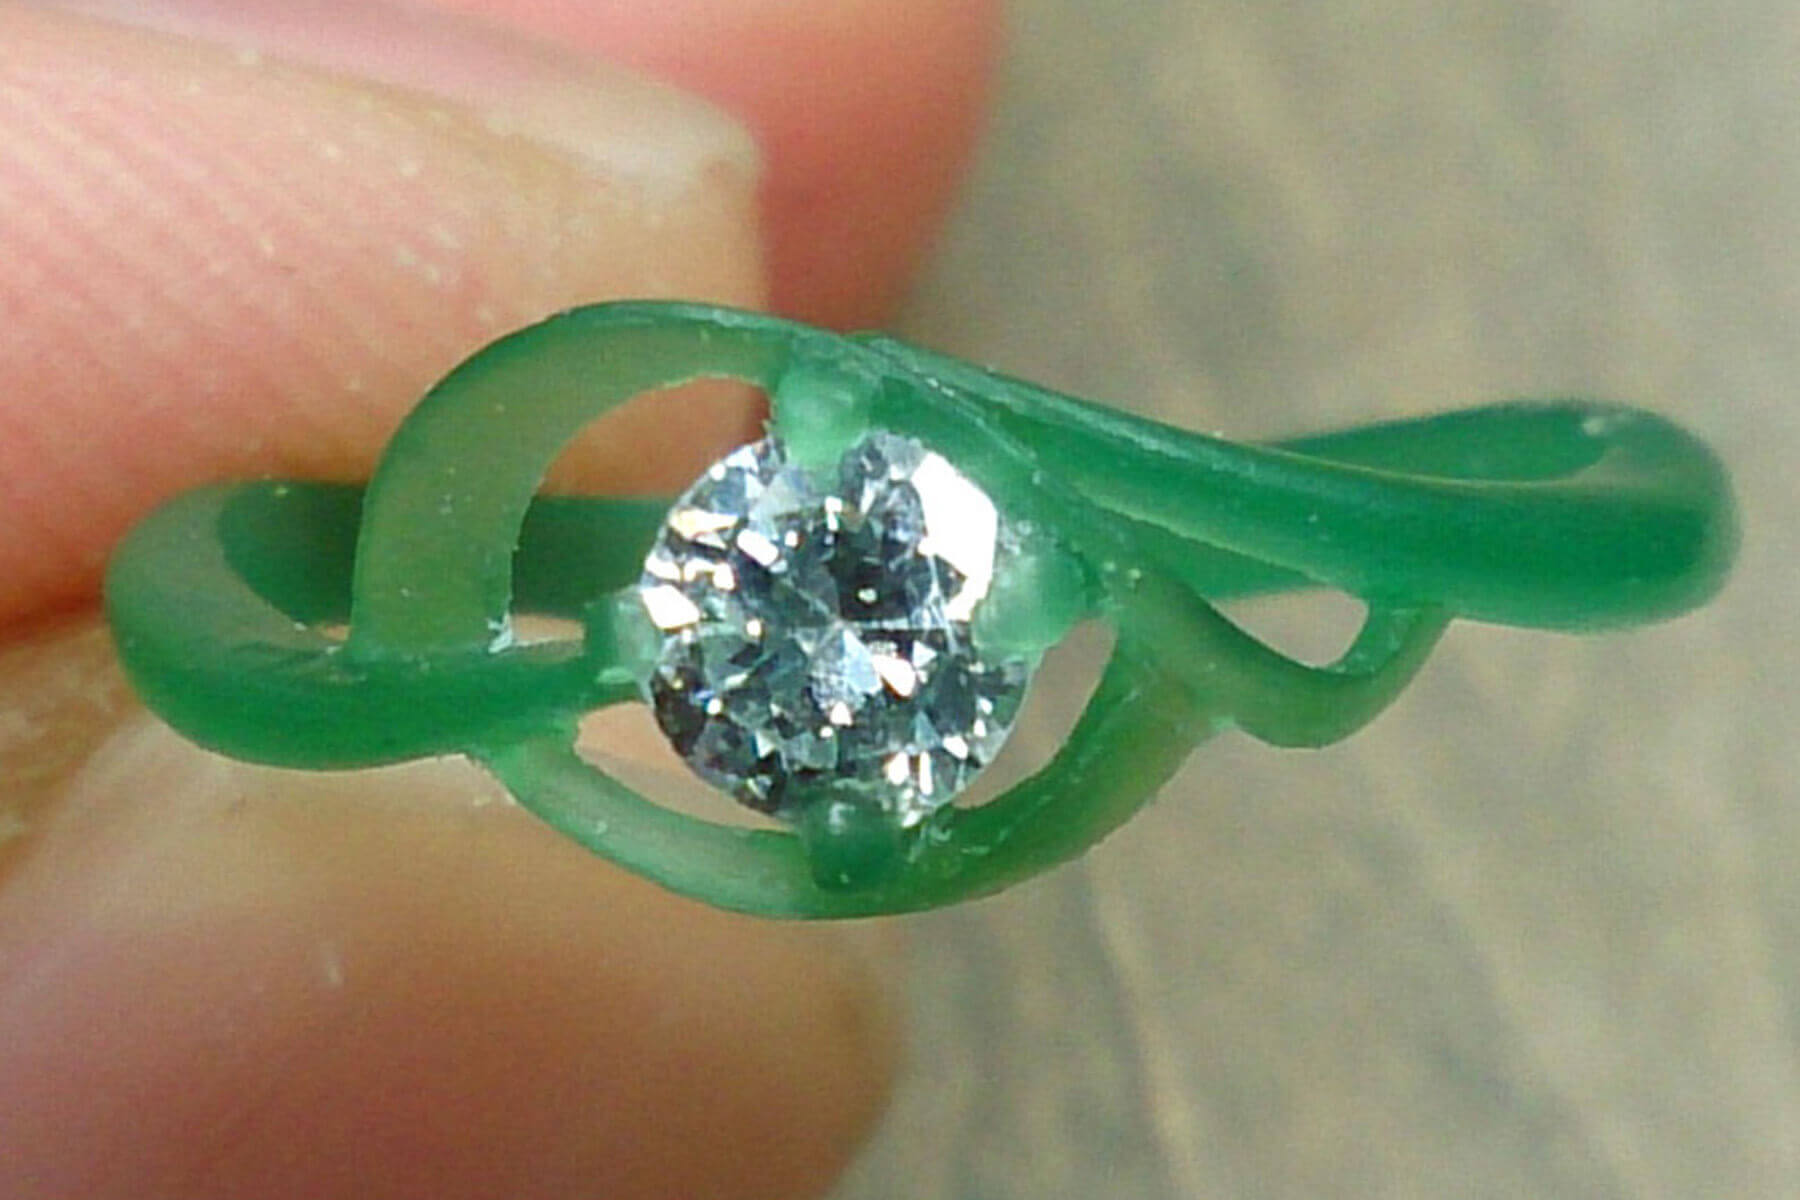 オーダーメイド・製法 | 原型製作 | かざりやゆい | 世界に一つだけの結婚指輪「kazariya Yui」 | 福島県郡山市